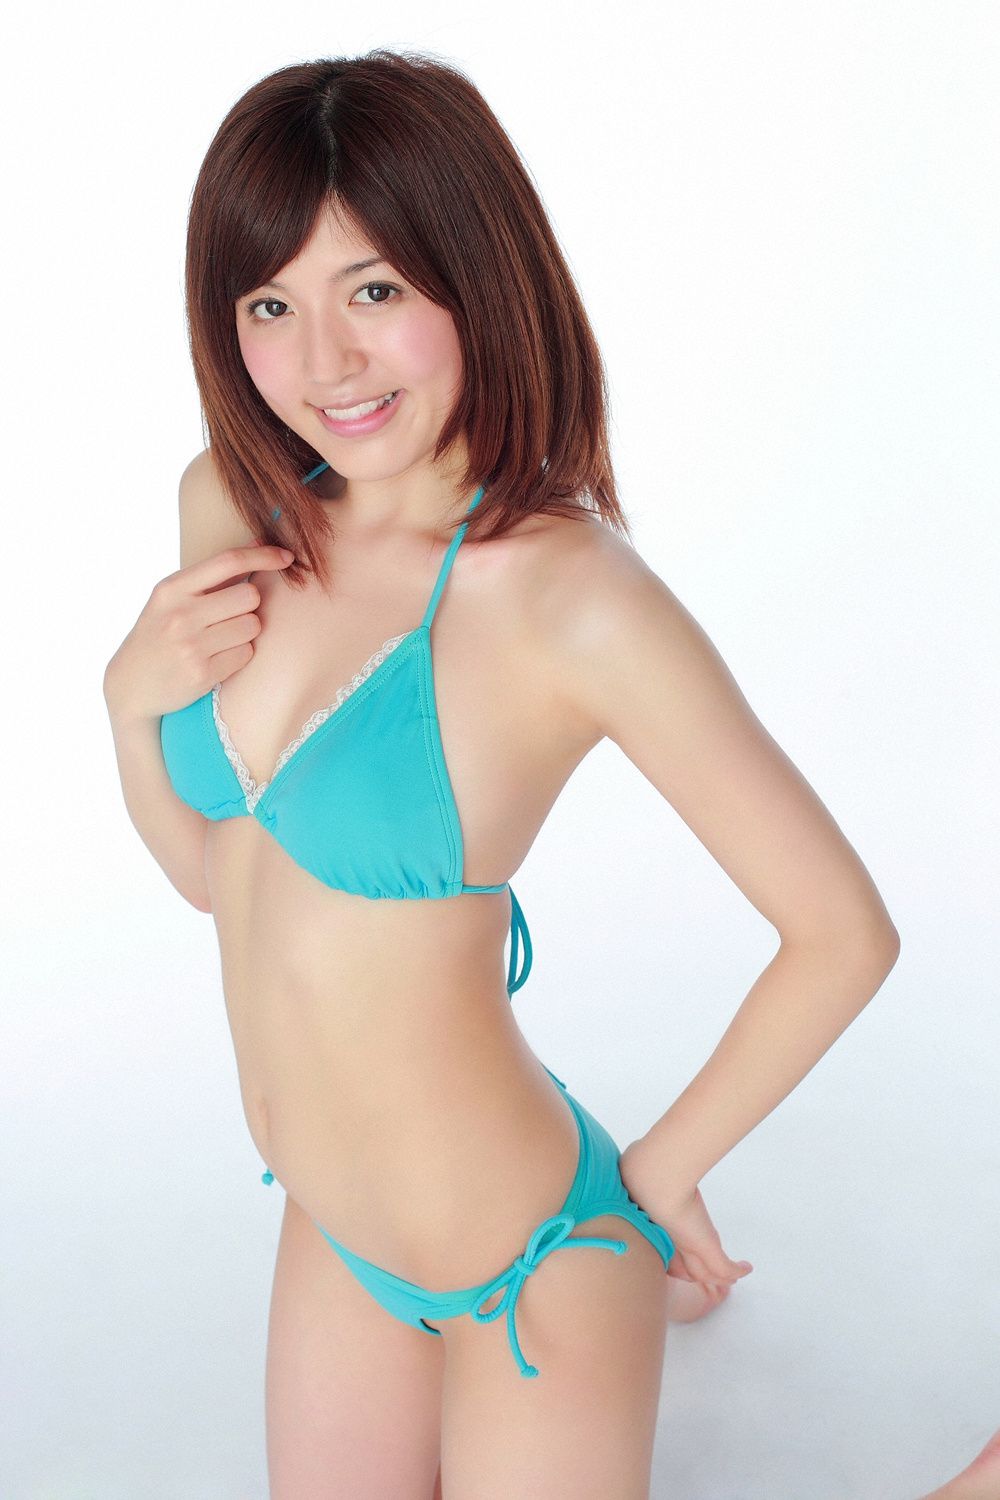 Mayuka Shirasawa 白澤まゆか《Sexy レースクイーン入学!!》 [YS Web] Vol.313